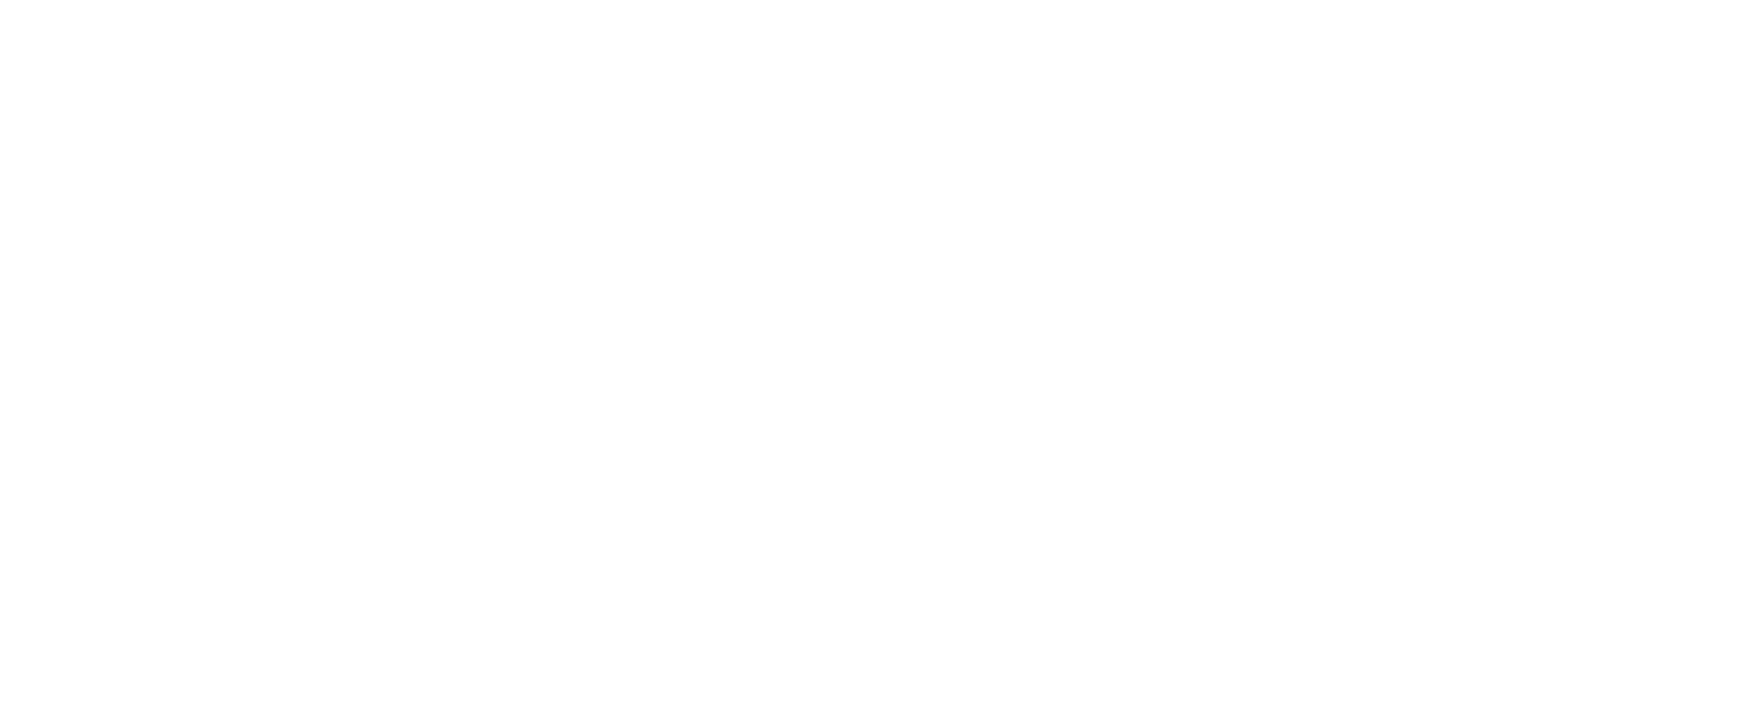 Image of Hermes logo